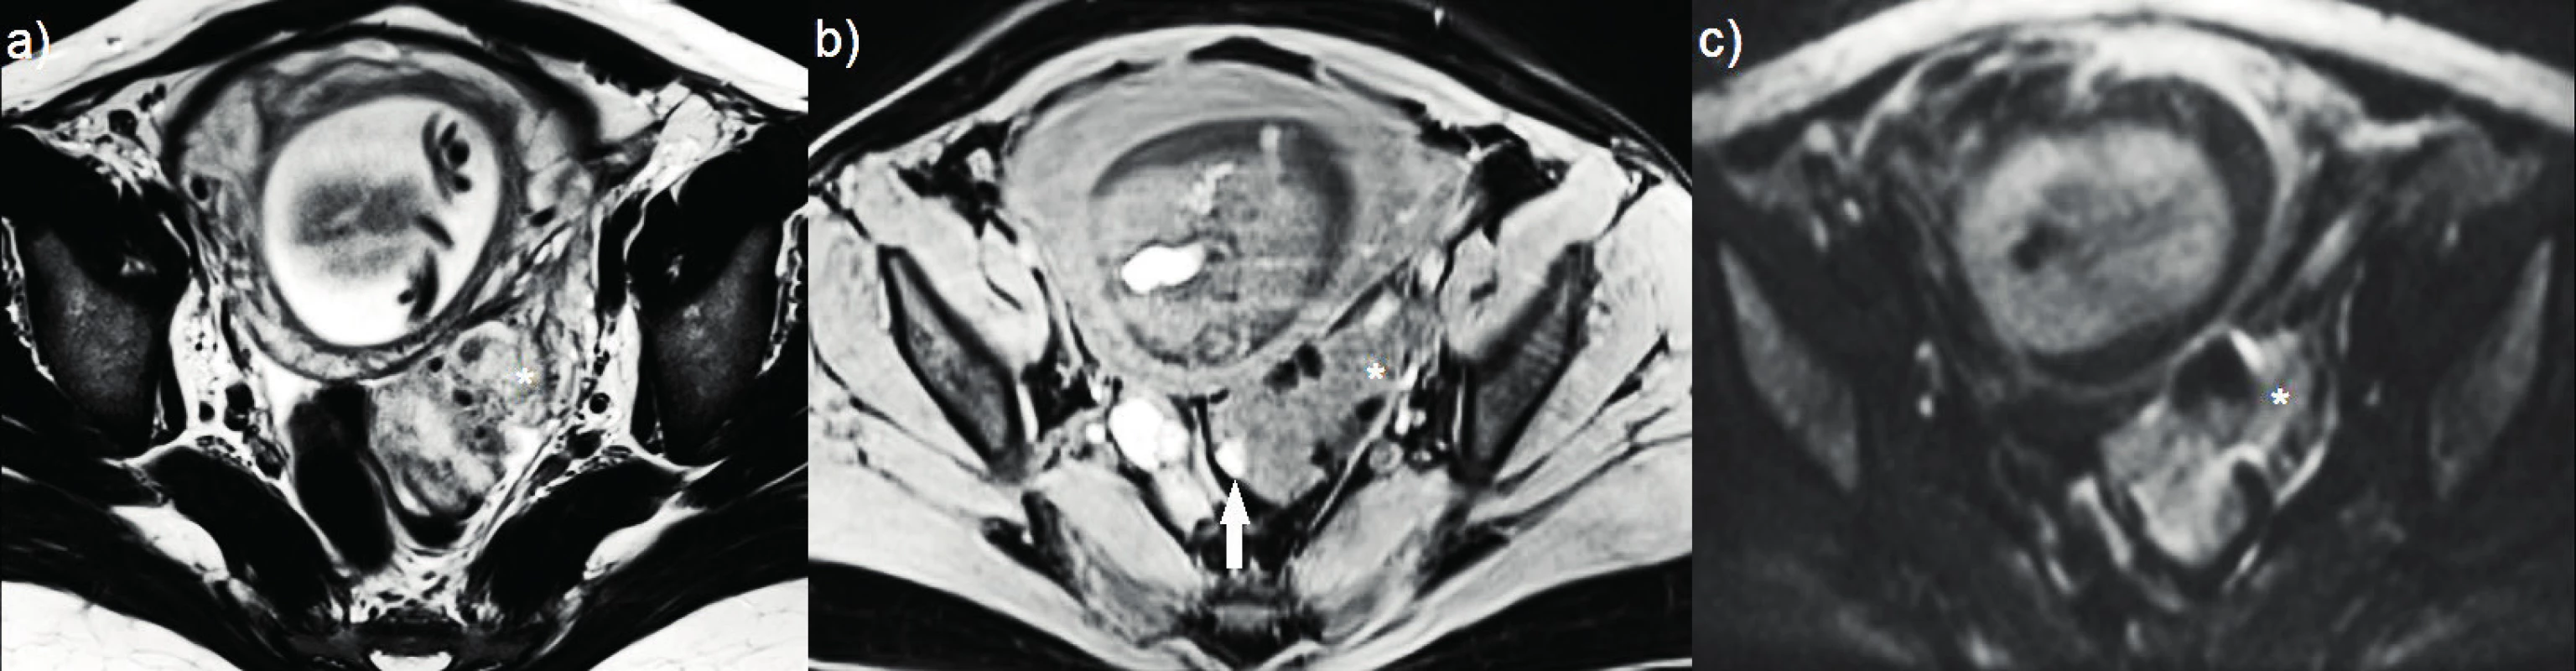 Zobrazení magnetickou rezonancí<br>
(a–c) nodulus hluboké infiltrující endometriózy postihující sigmoideum, diagnostikovaný v graviditě se známkami decidualizace; (a) T2
vážený obraz – ložisko sníženého signálu s hyposignálními okrsky (hvězdička); (b) T1 vážený obraz s potlačením tuku – ložisko izosignální
s endometriem v dutině děložní (hvězdička), hypersignální okrsek odpovídá přítomnosti rozpadových produktů hemoglobinu (šipka);
(c) difuzně vážená sekvence – absence restrikce difuze uvnitř léze (hvězdička).